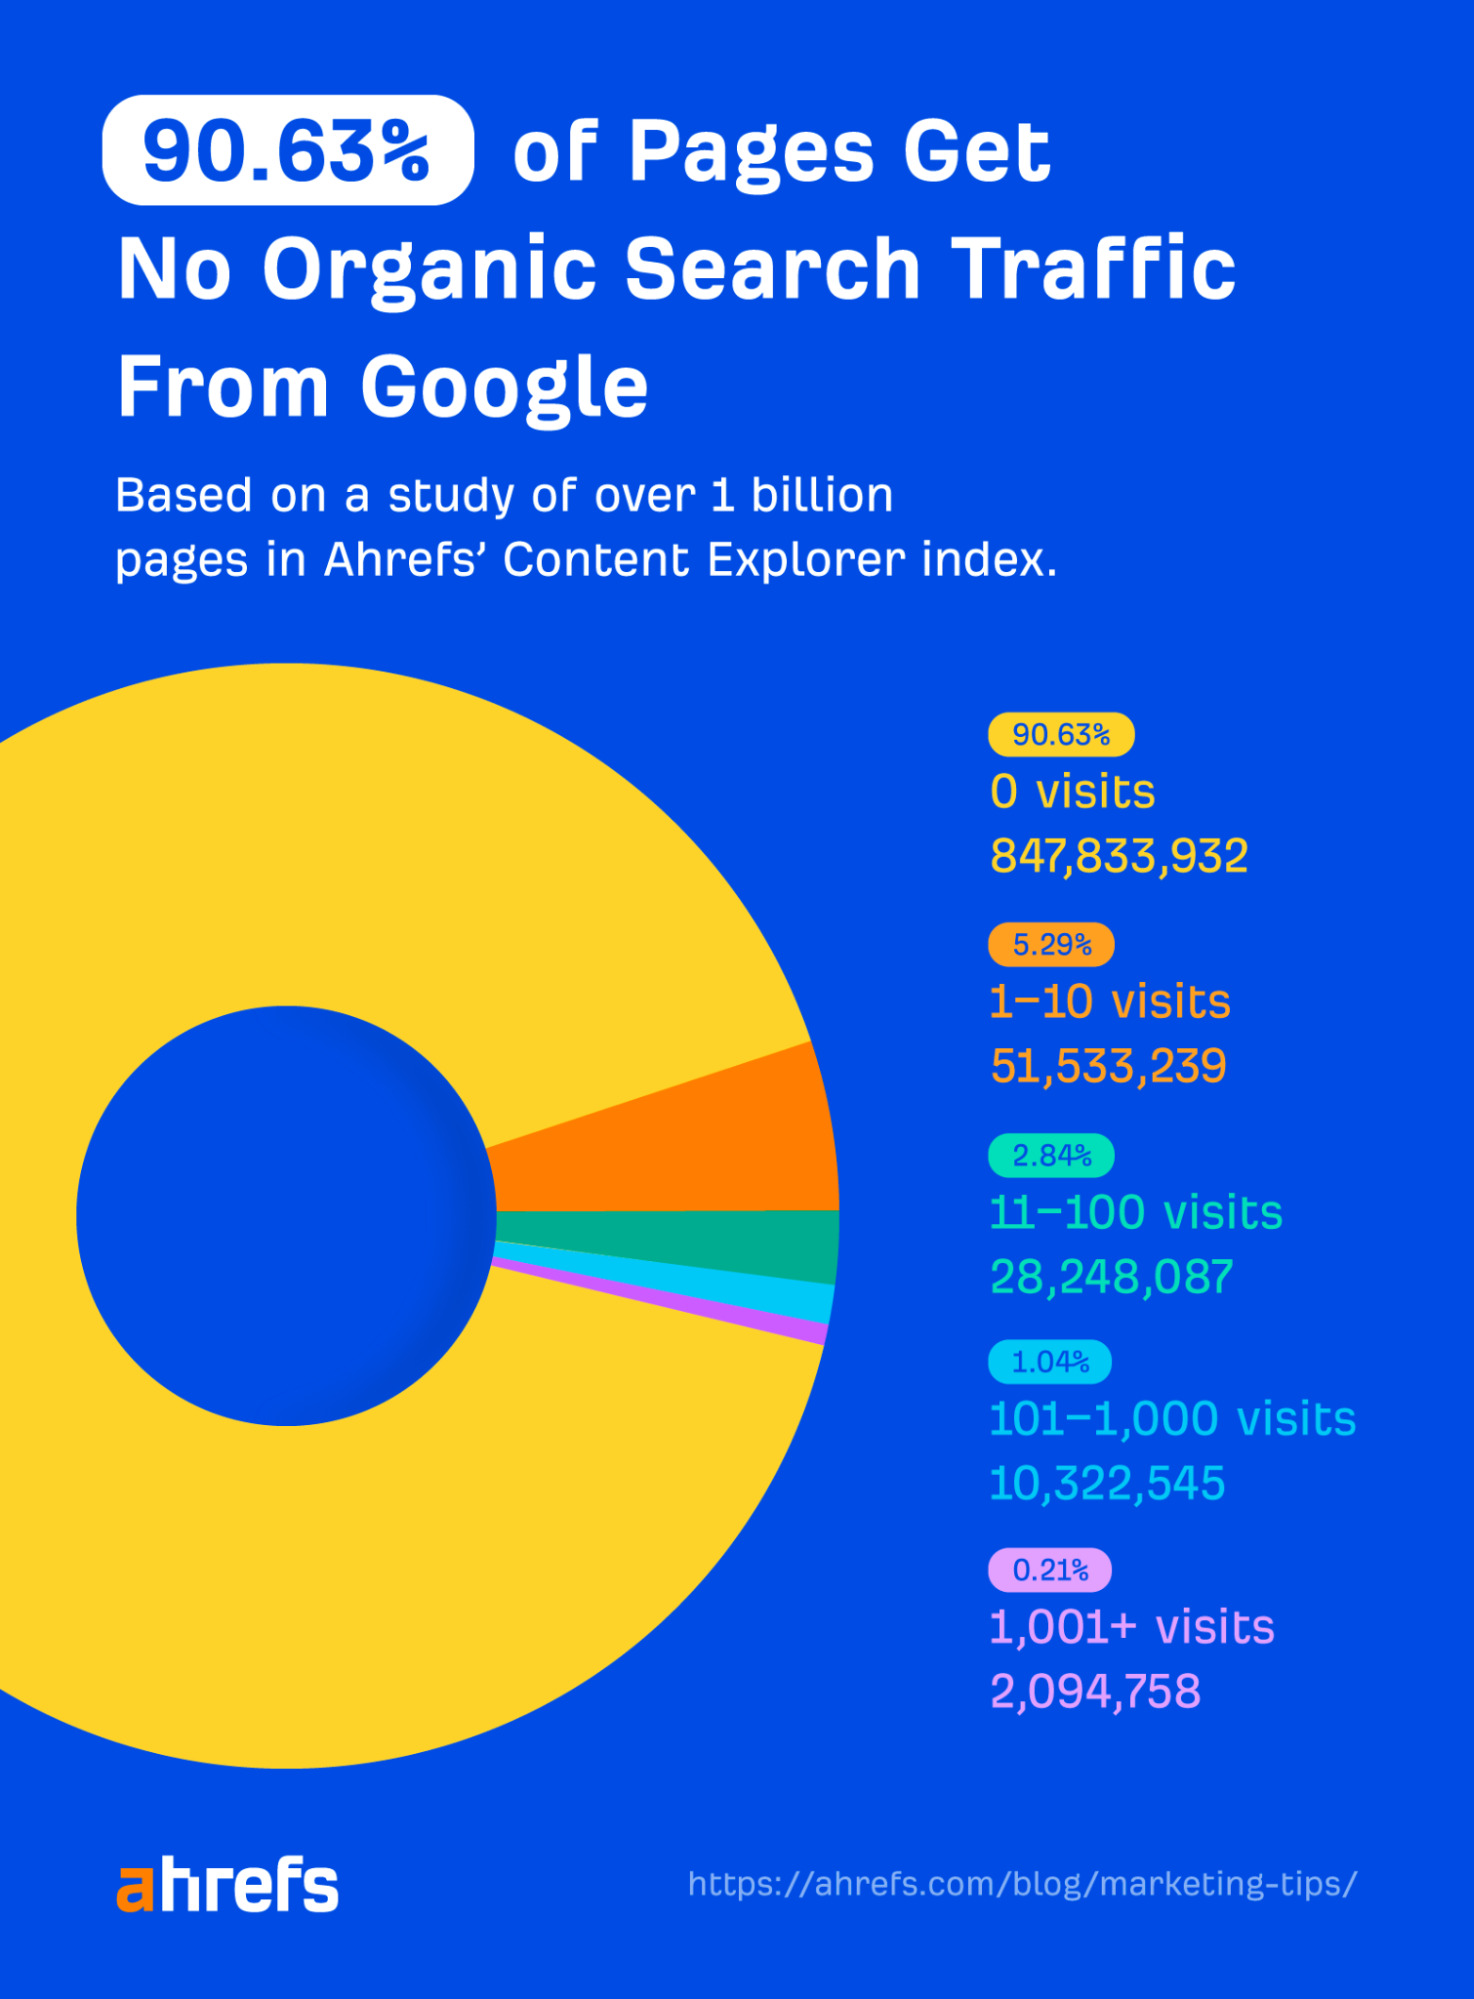 90.63% sidor får noll trafik från Google, enligt en Ahrefs-studie